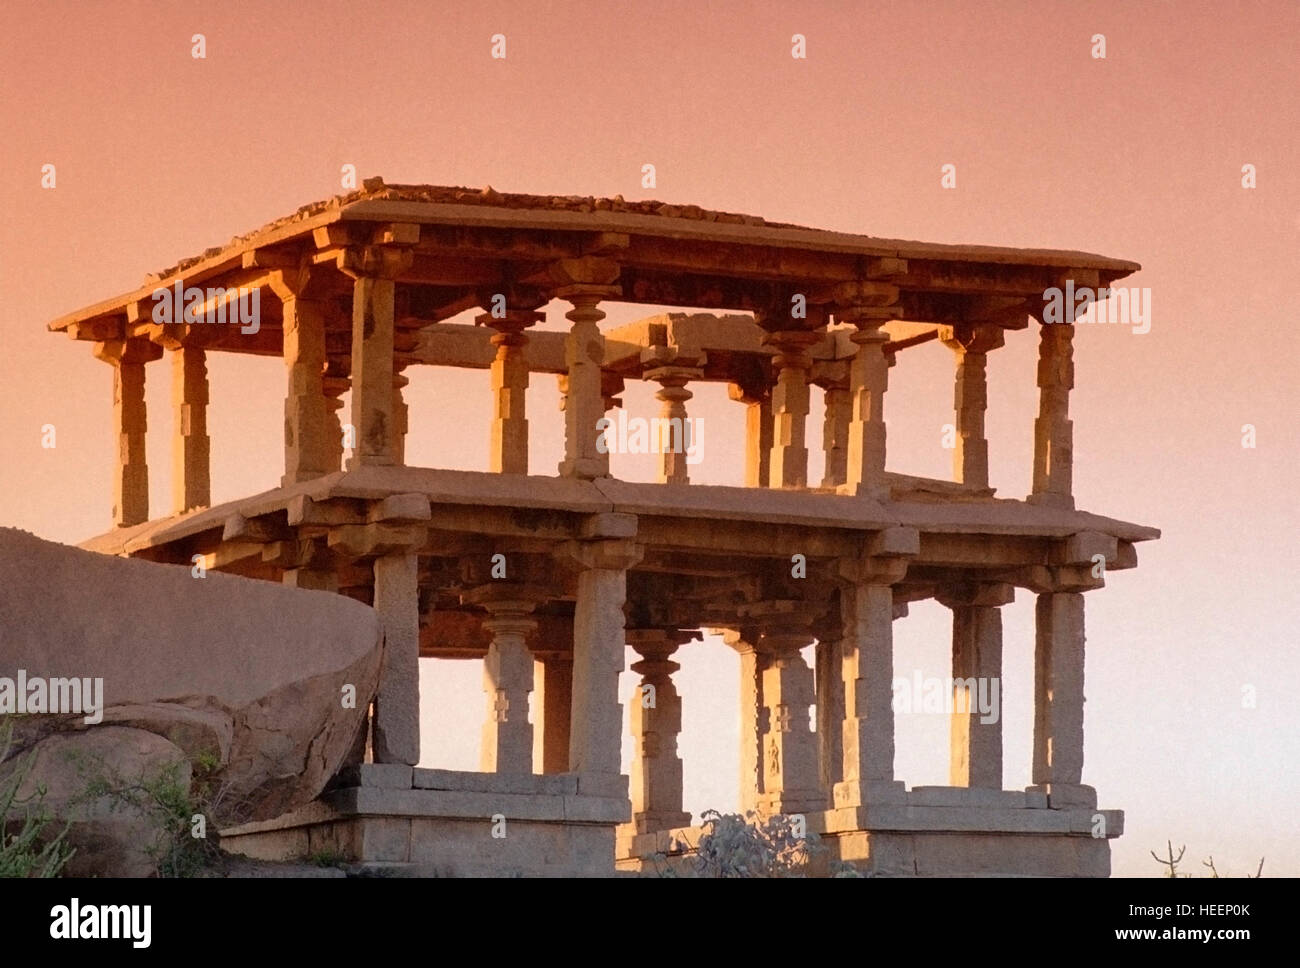 Hampi fut la capitale de l'un des plus grands empires dans l'histoire de l'Inde. L'empire de Vijayanagar à son zénith (début 16e siècle) contrôlait l'e Banque D'Images